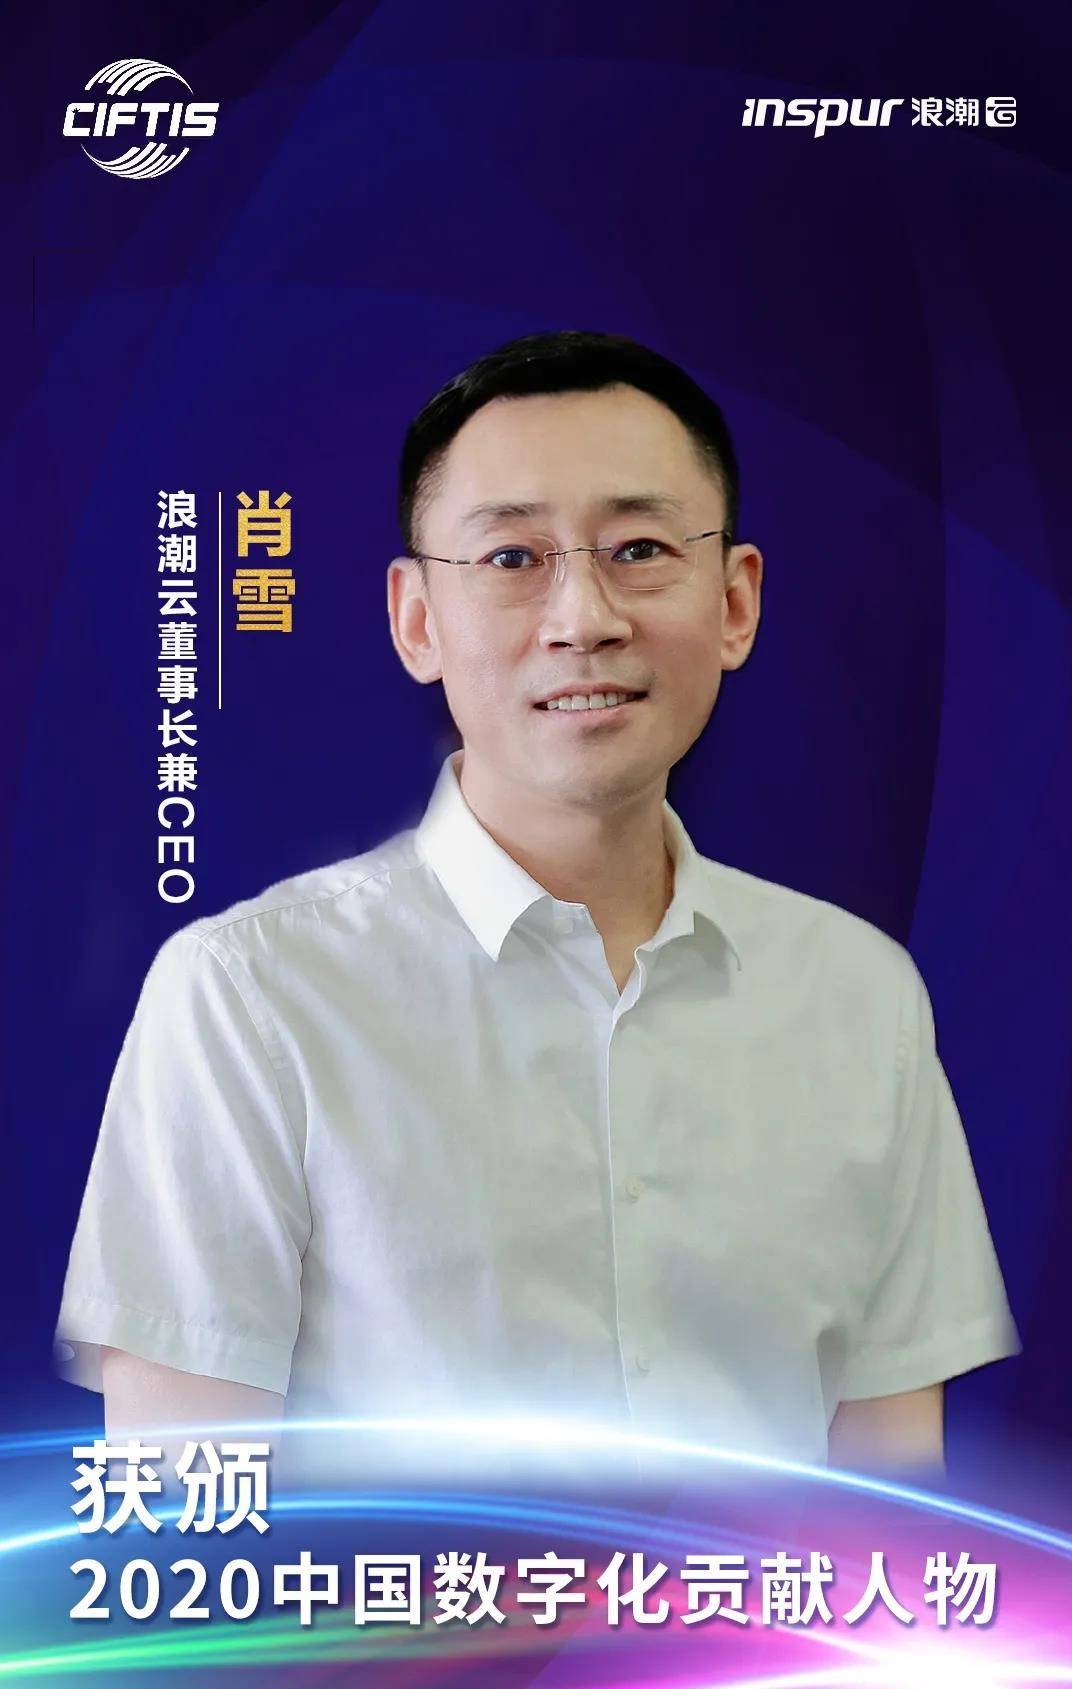 浪潮云肖雪获颁2020中国数字化贡献人物